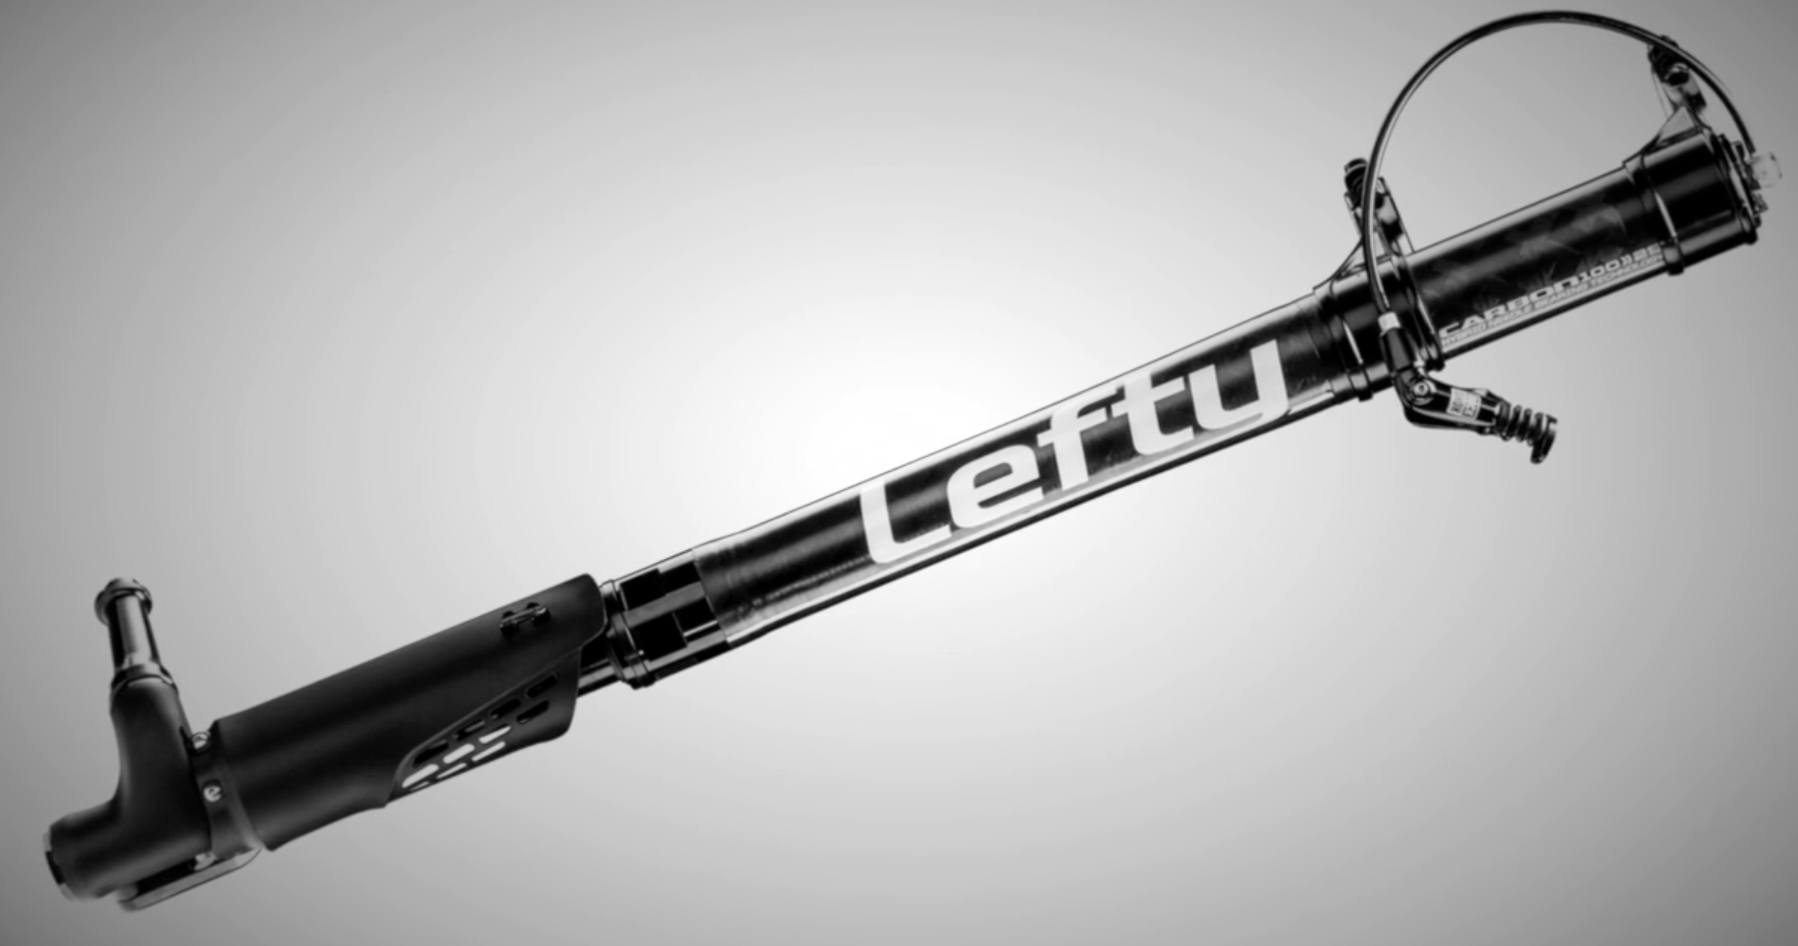 Lefty hybrid 2.0 Carbon | eighty-aid.com